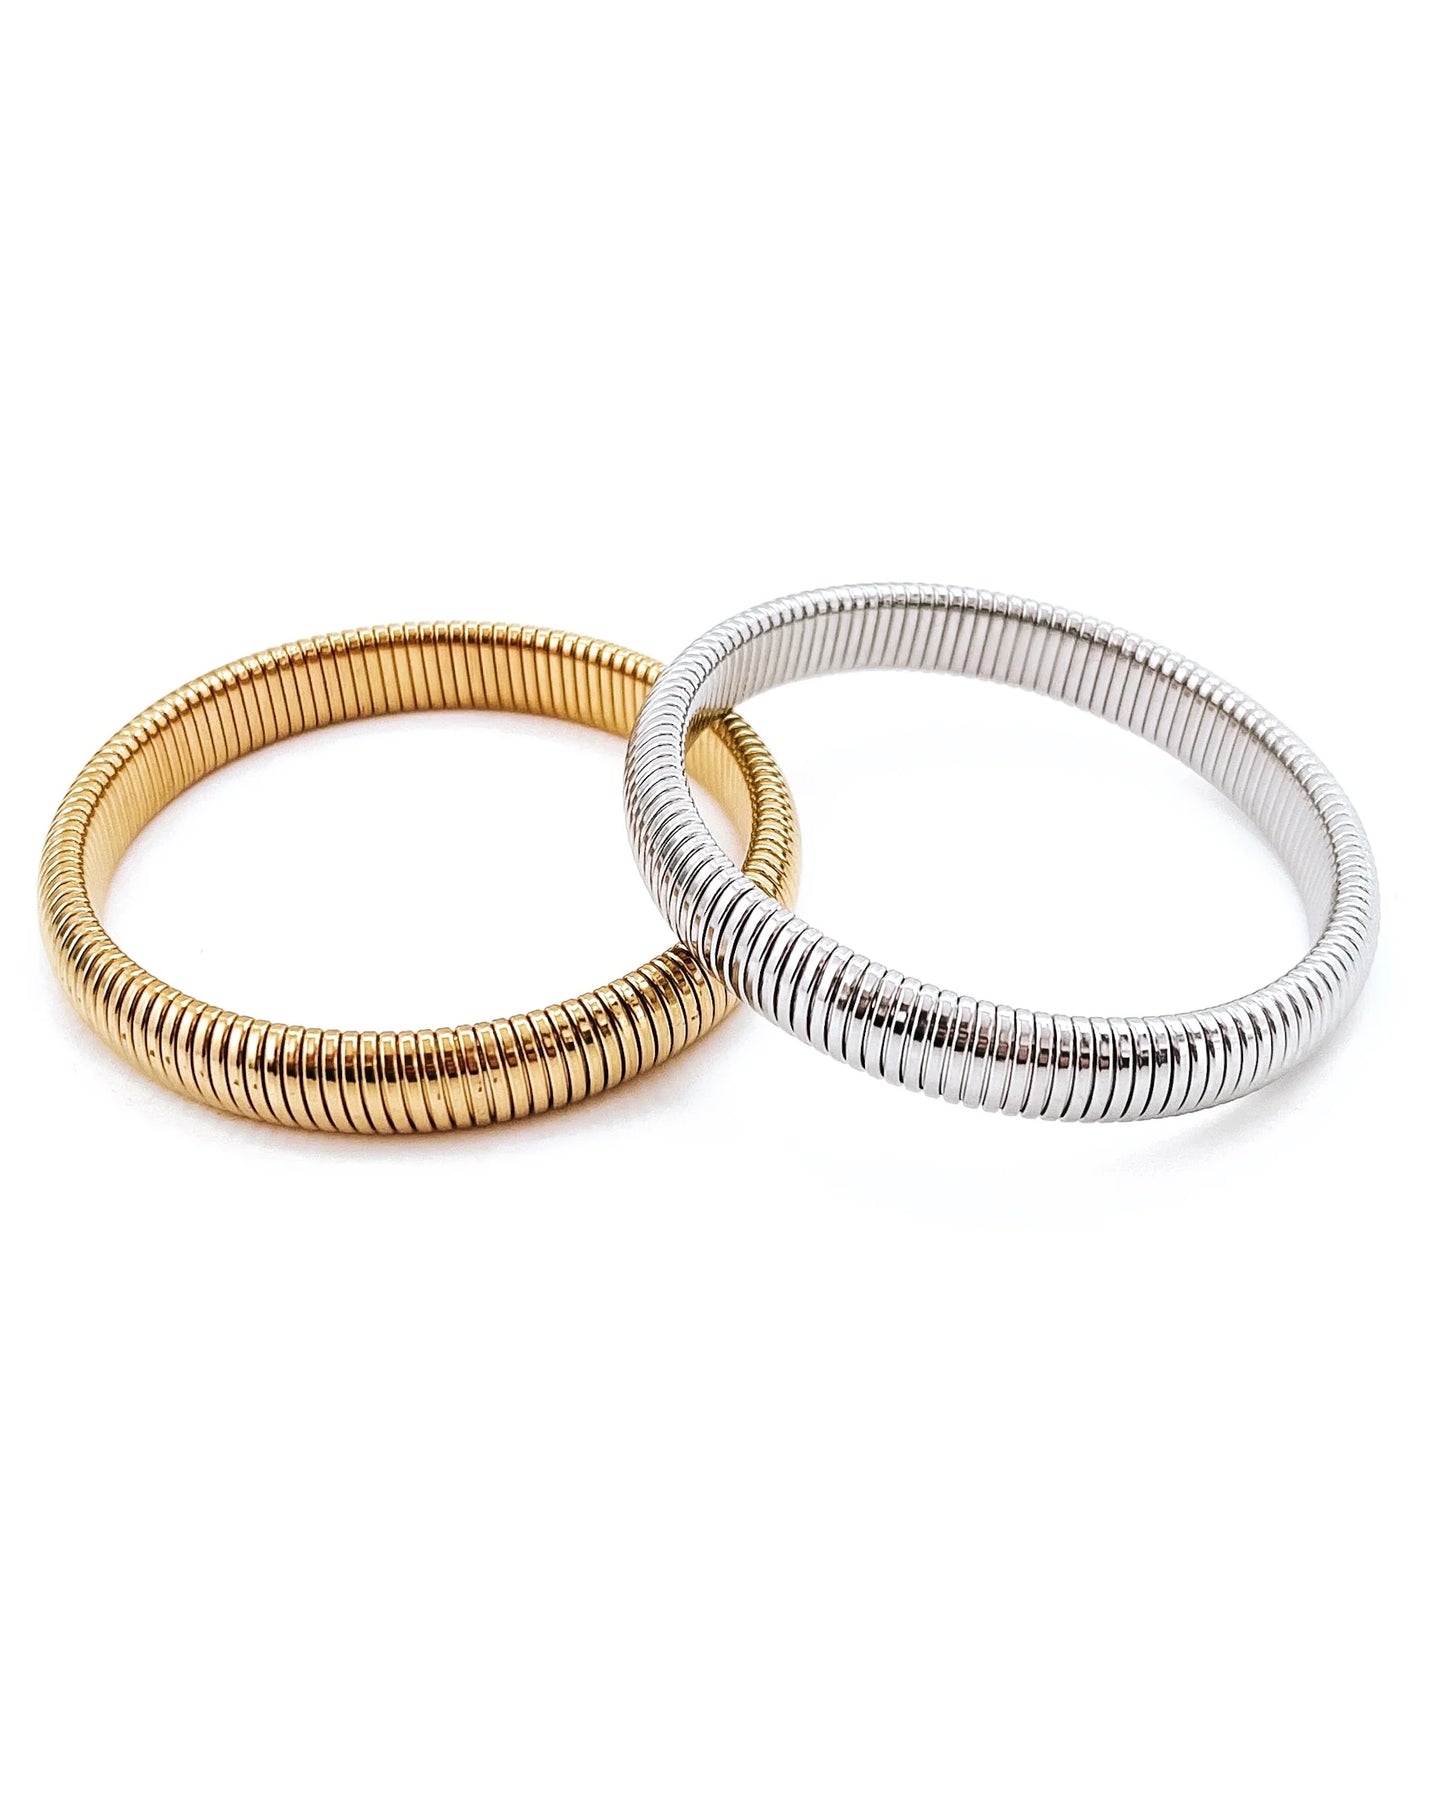 Thin coil Bangle Bracelet- 2 Colors!